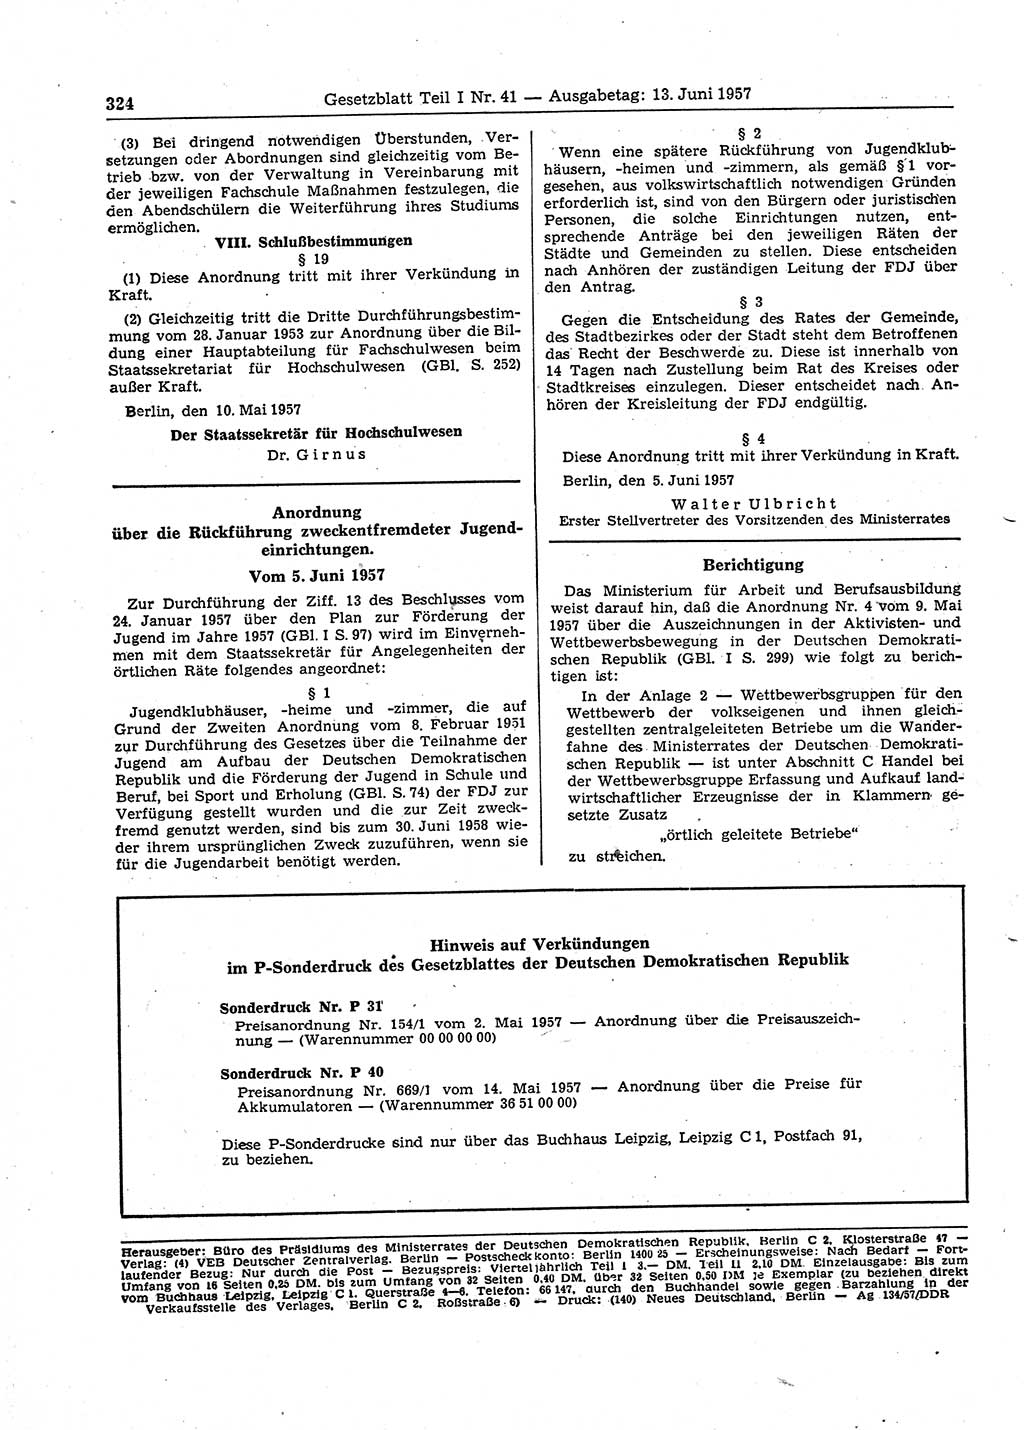 Gesetzblatt (GBl.) der Deutschen Demokratischen Republik (DDR) Teil Ⅰ 1957, Seite 324 (GBl. DDR Ⅰ 1957, S. 324)